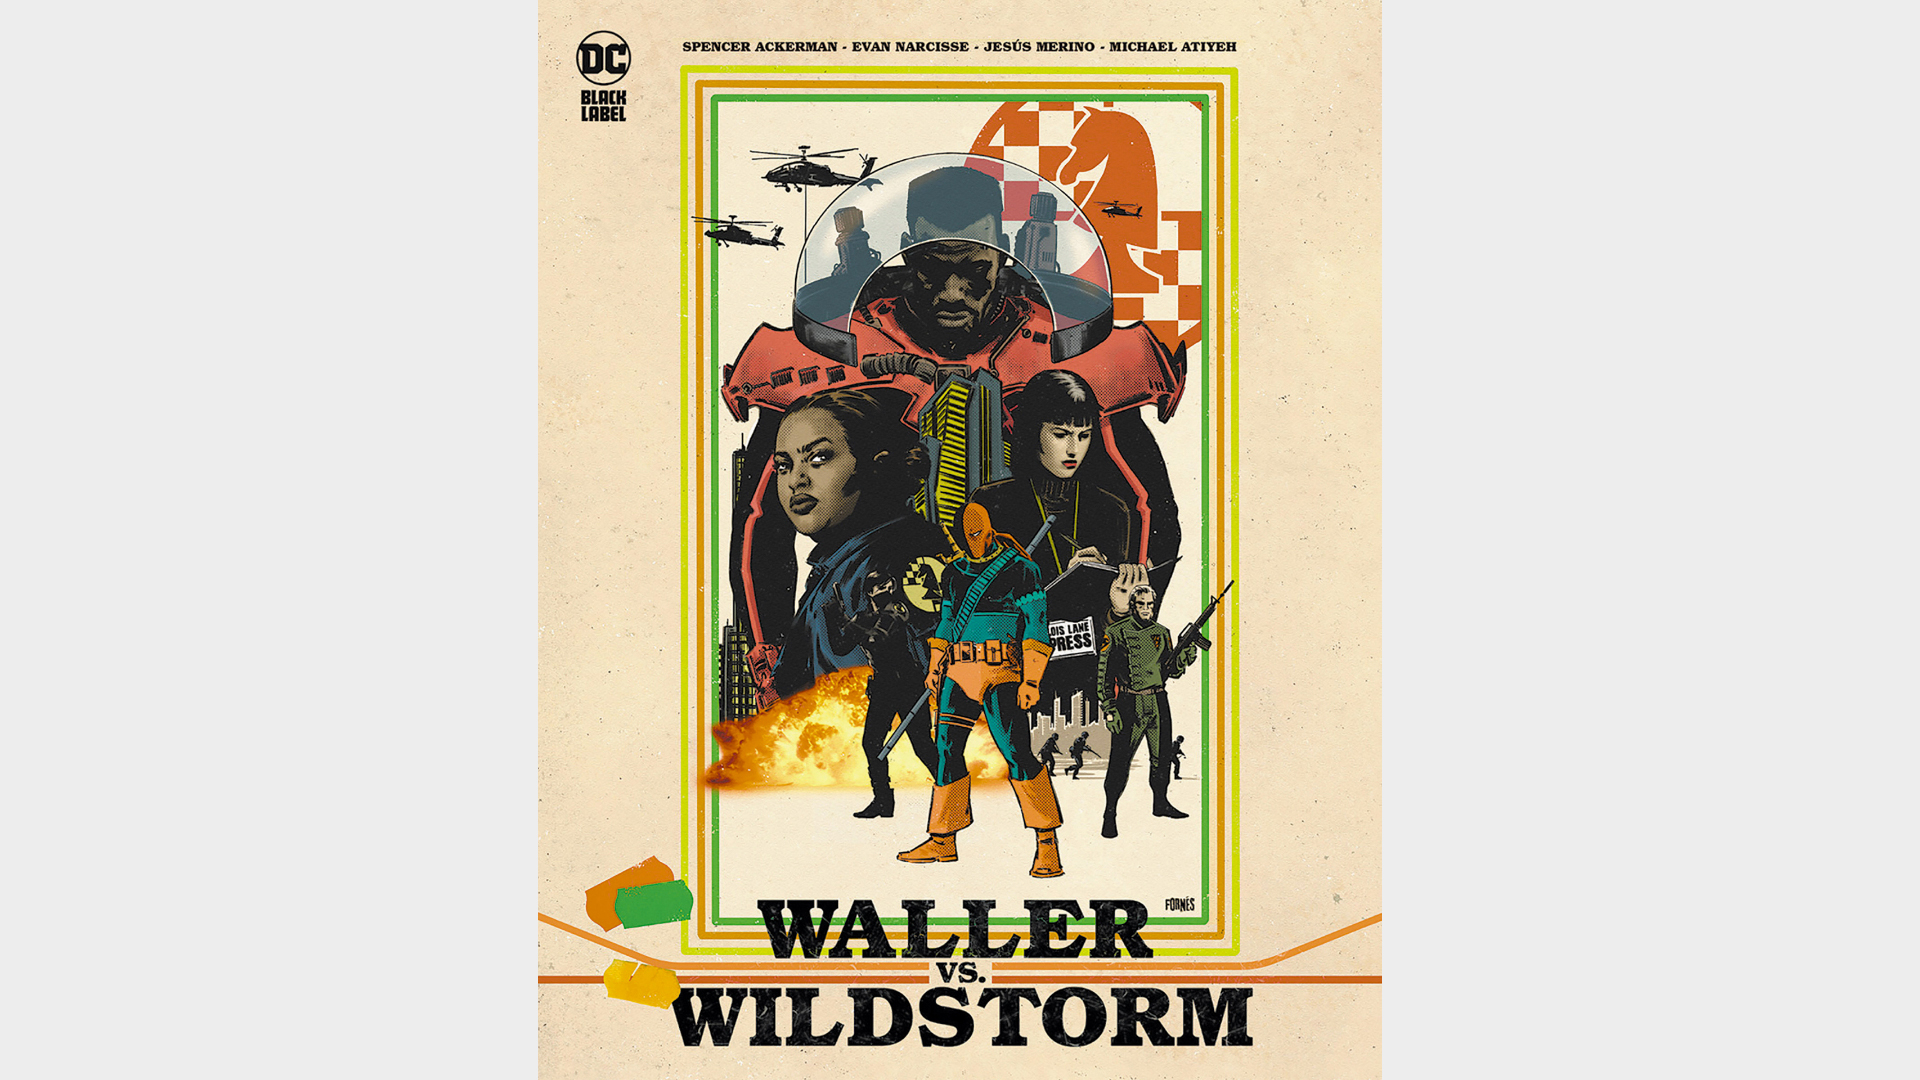 WALLER VS. WILDSTORM